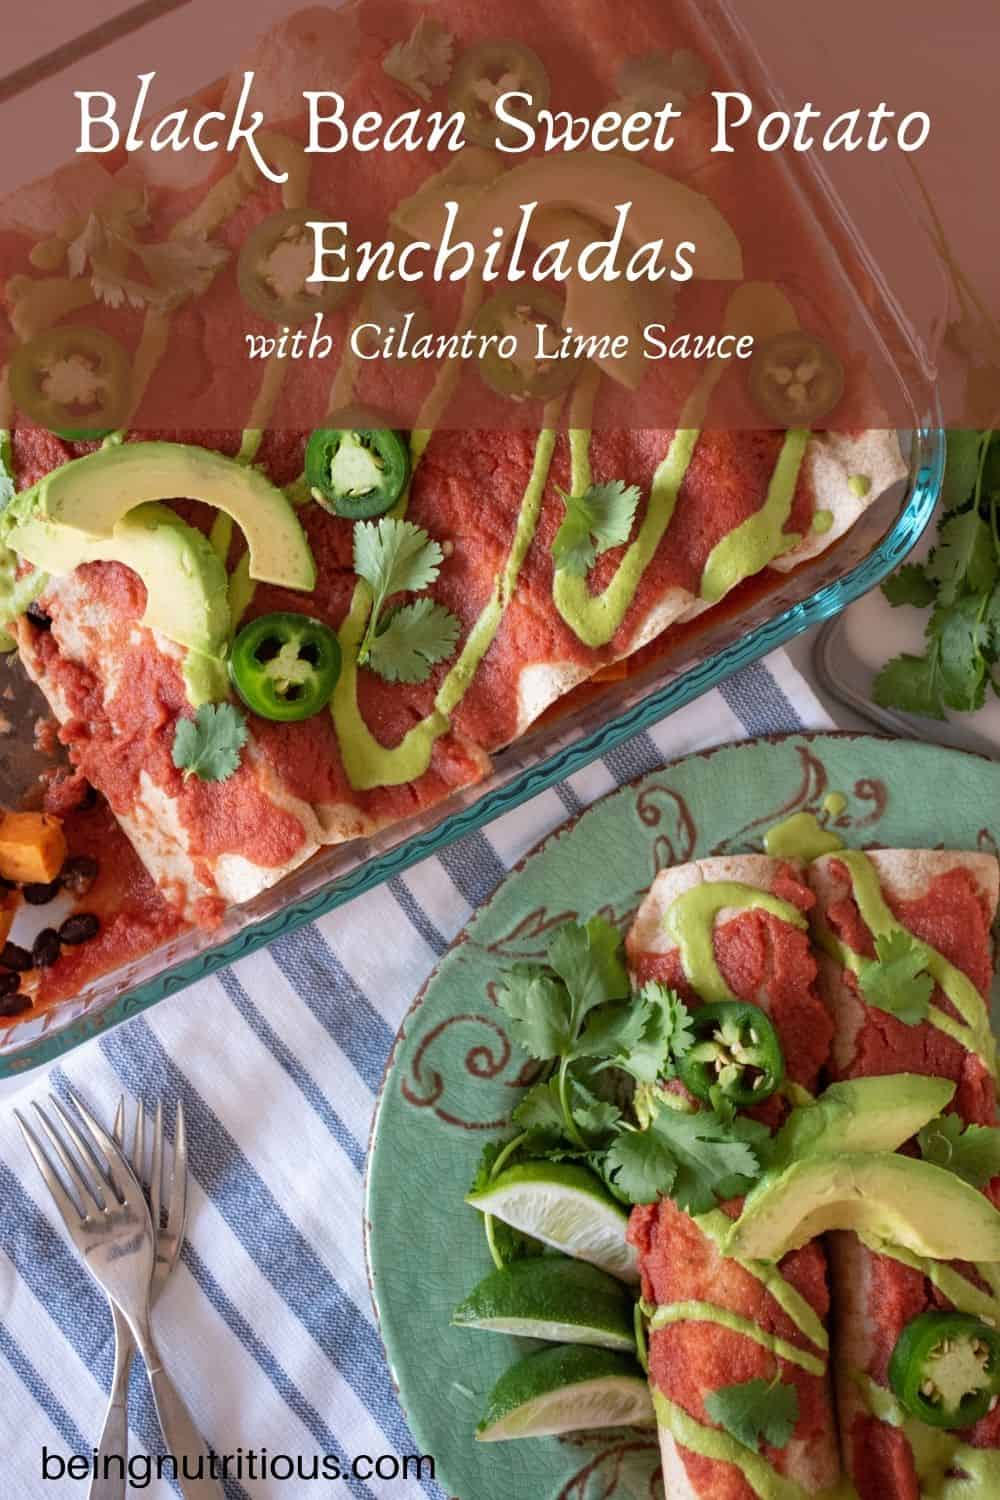 Overhead shot of enchiladas on a plate and pan of enchiladas. Text overlay: Black Bean Sweet Potato Enchiladas with Cilantro Lime Sauce.